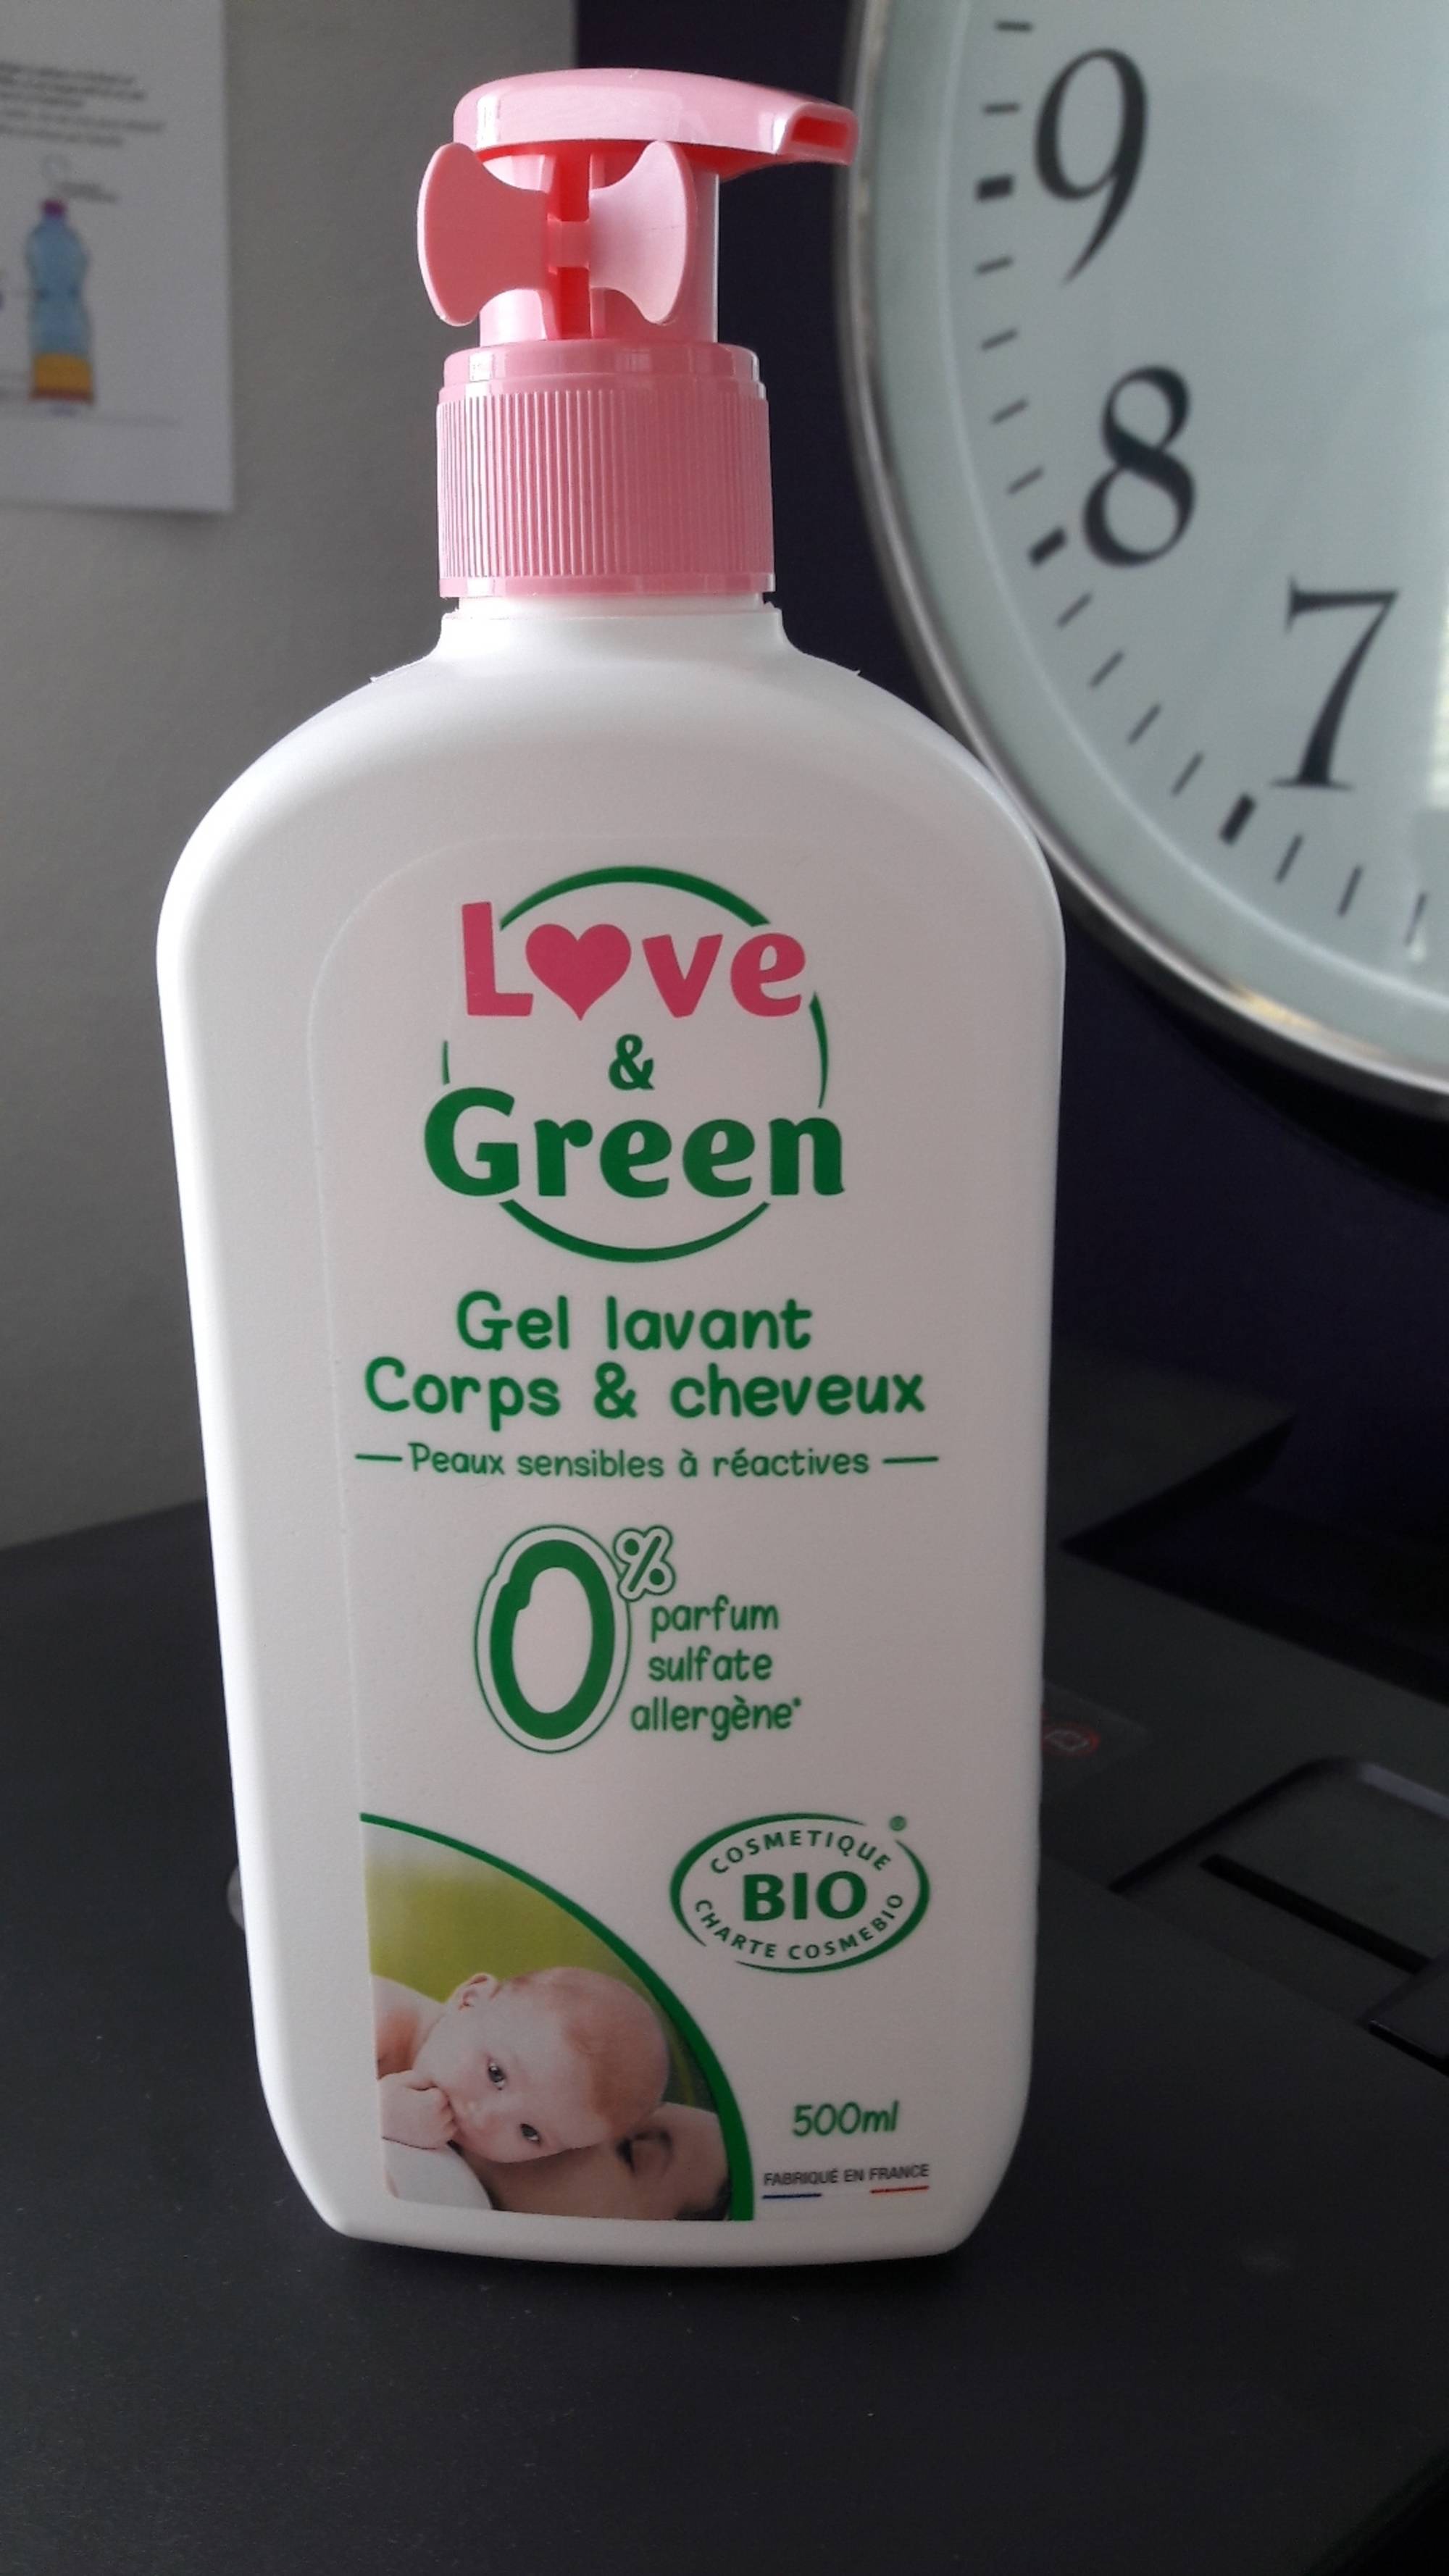 LOVE & GREEN - Gel lavant Corps & cheveux